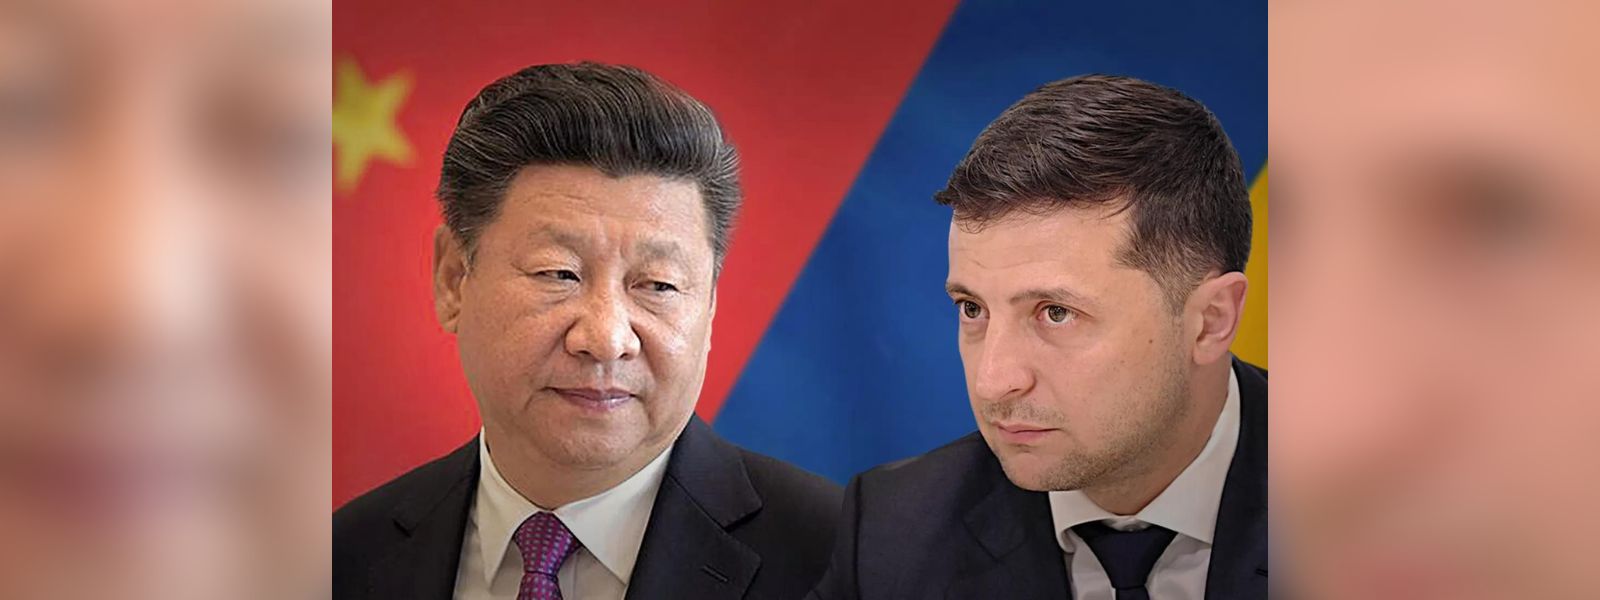 Zelensky wants Xi Jinping meeting